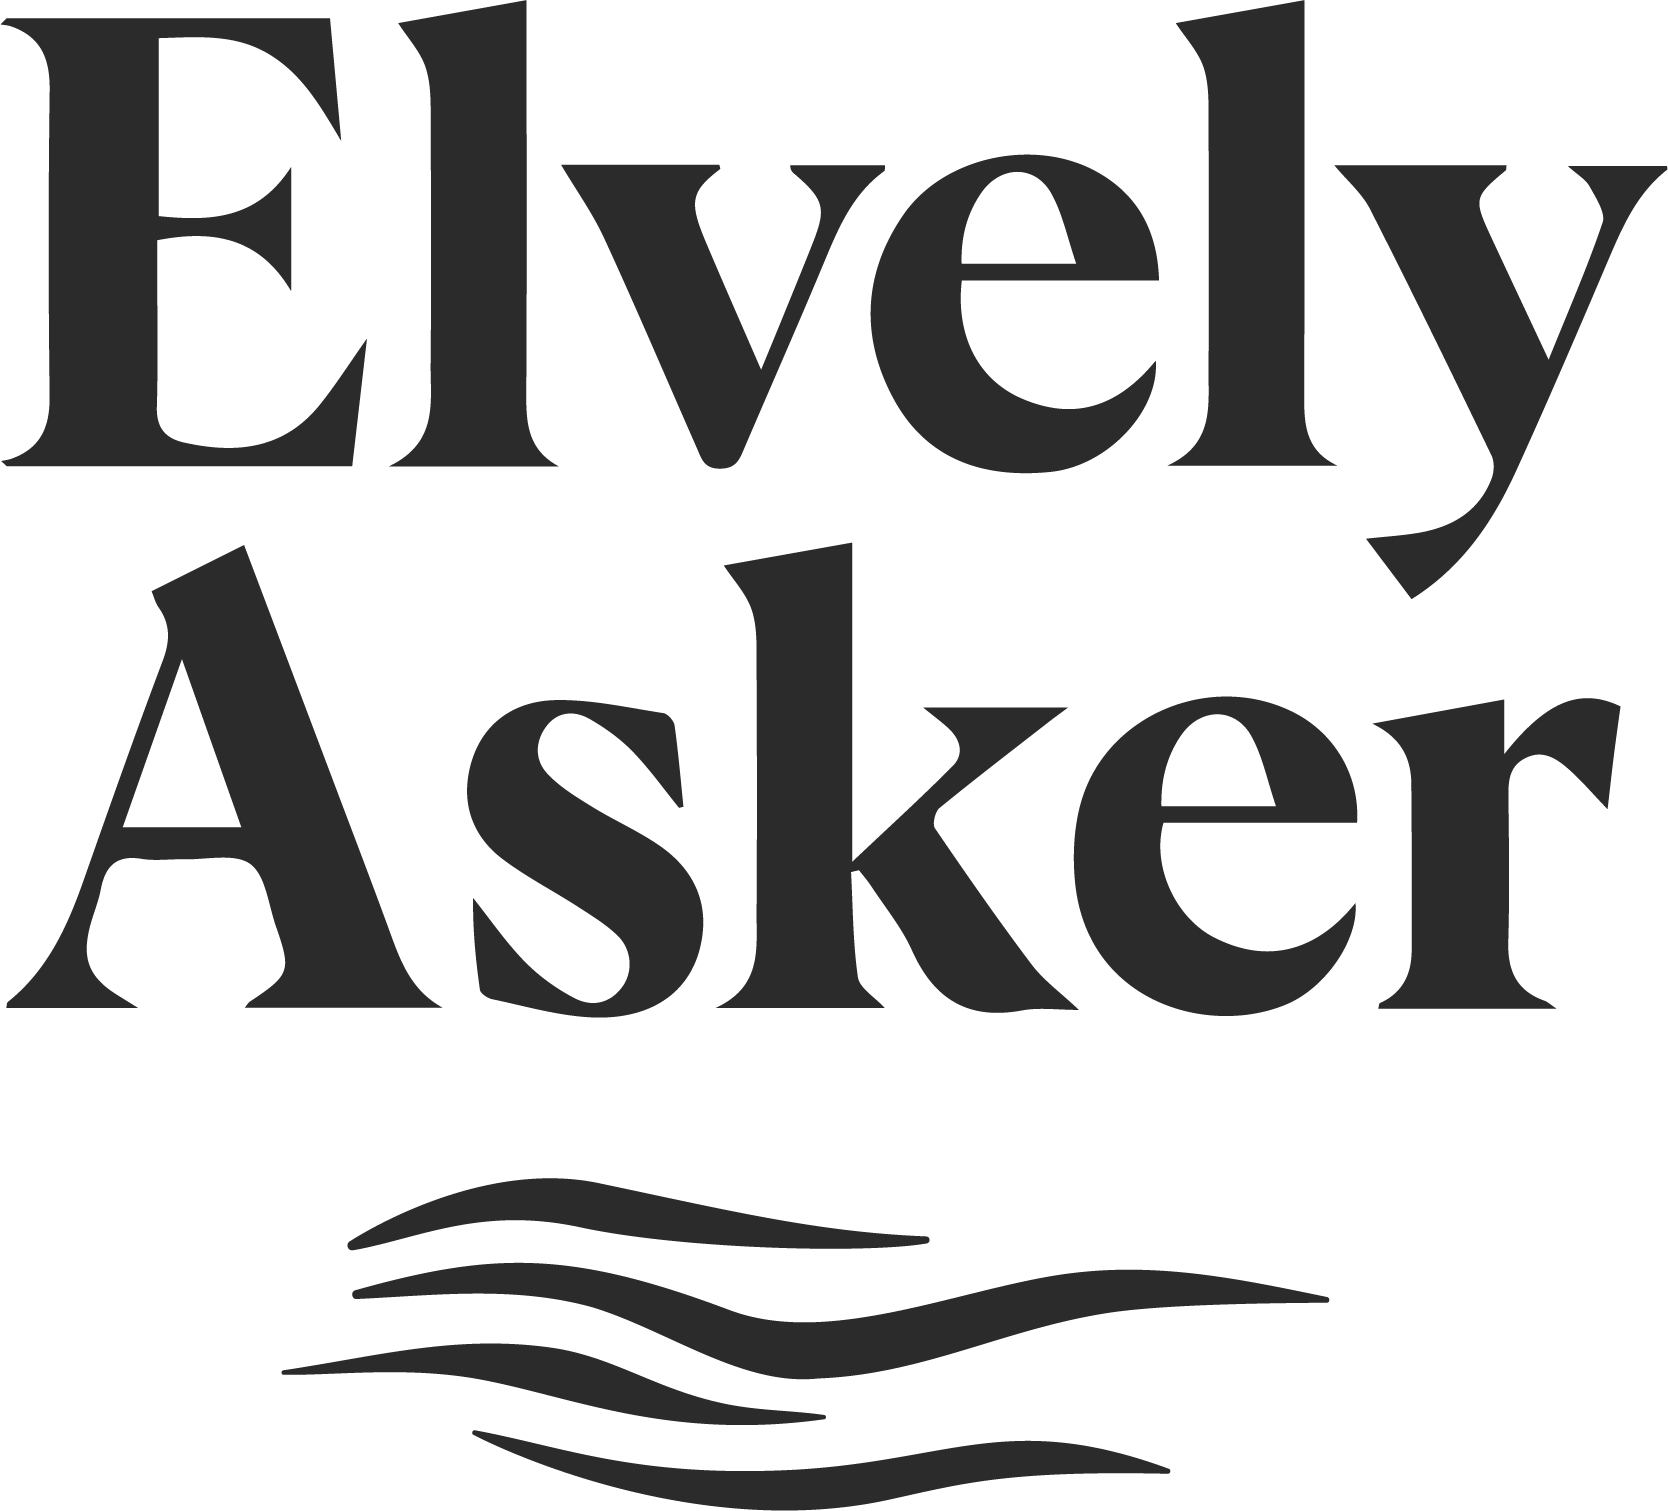 Logoen for Elvely Asker.